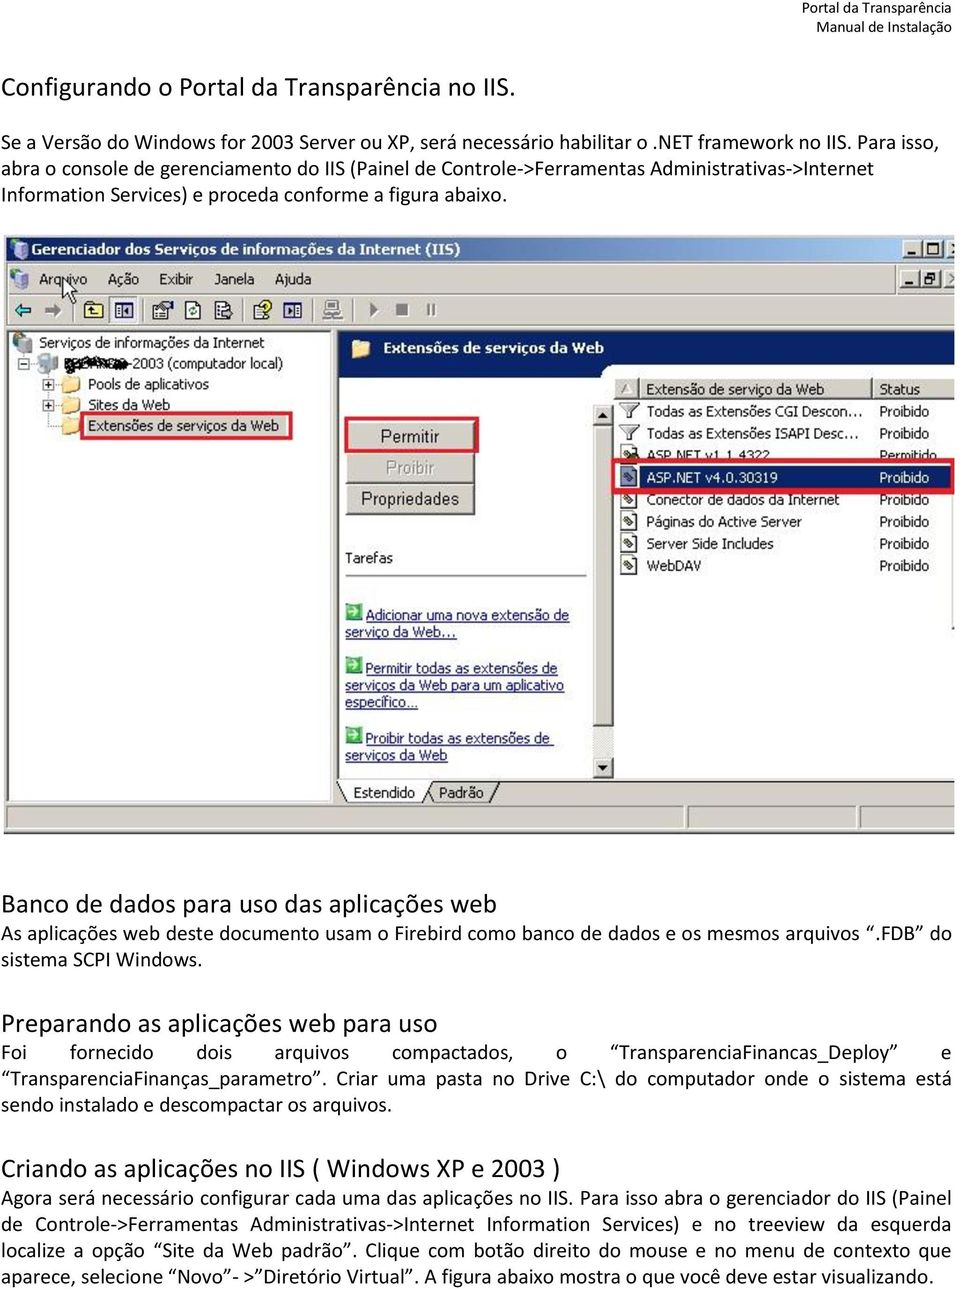 Banco de dados para uso das aplicações web As aplicações web deste documento usam o Firebird como banco de dados e os mesmos arquivos.fdb do sistema SCPI Windows.